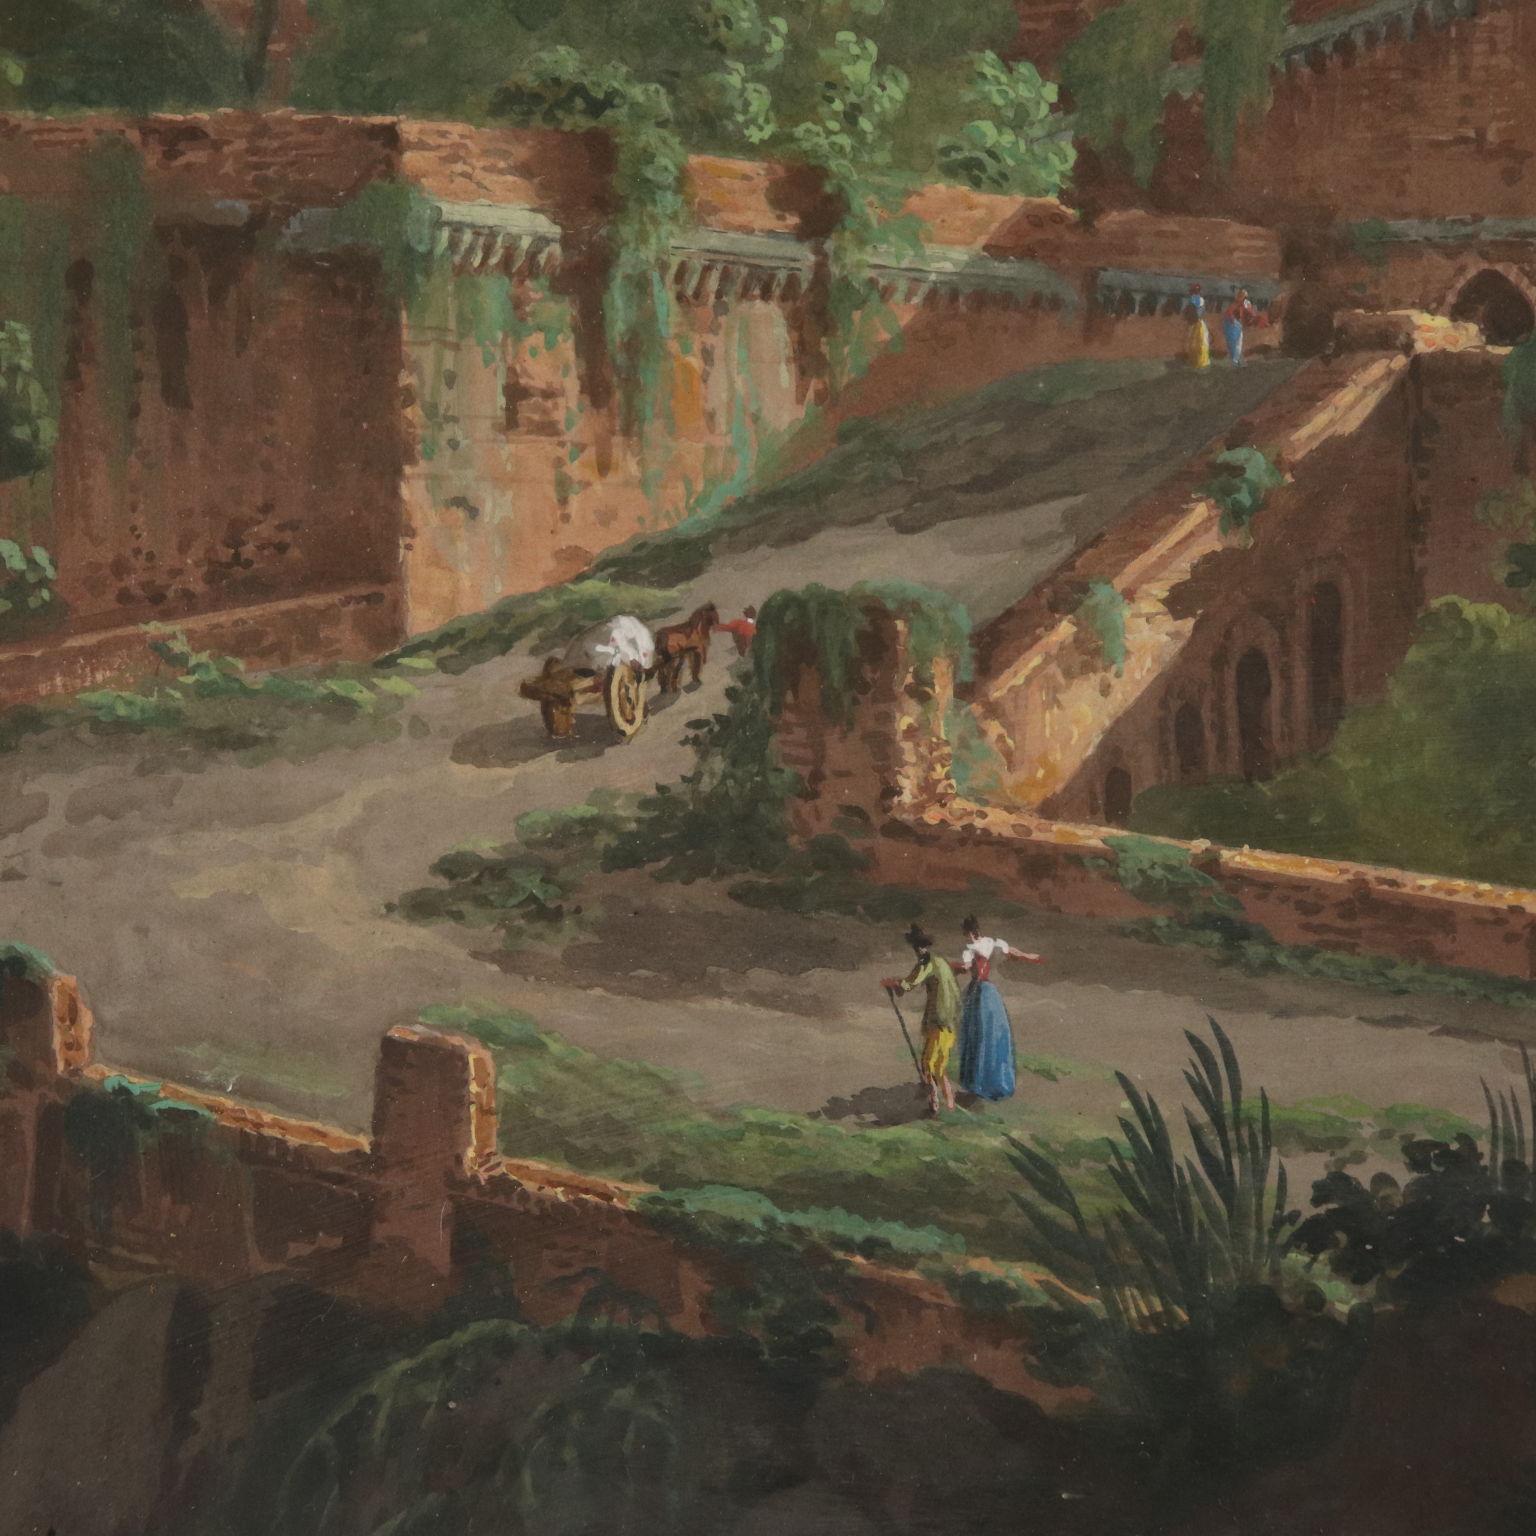 18th century landscape painters